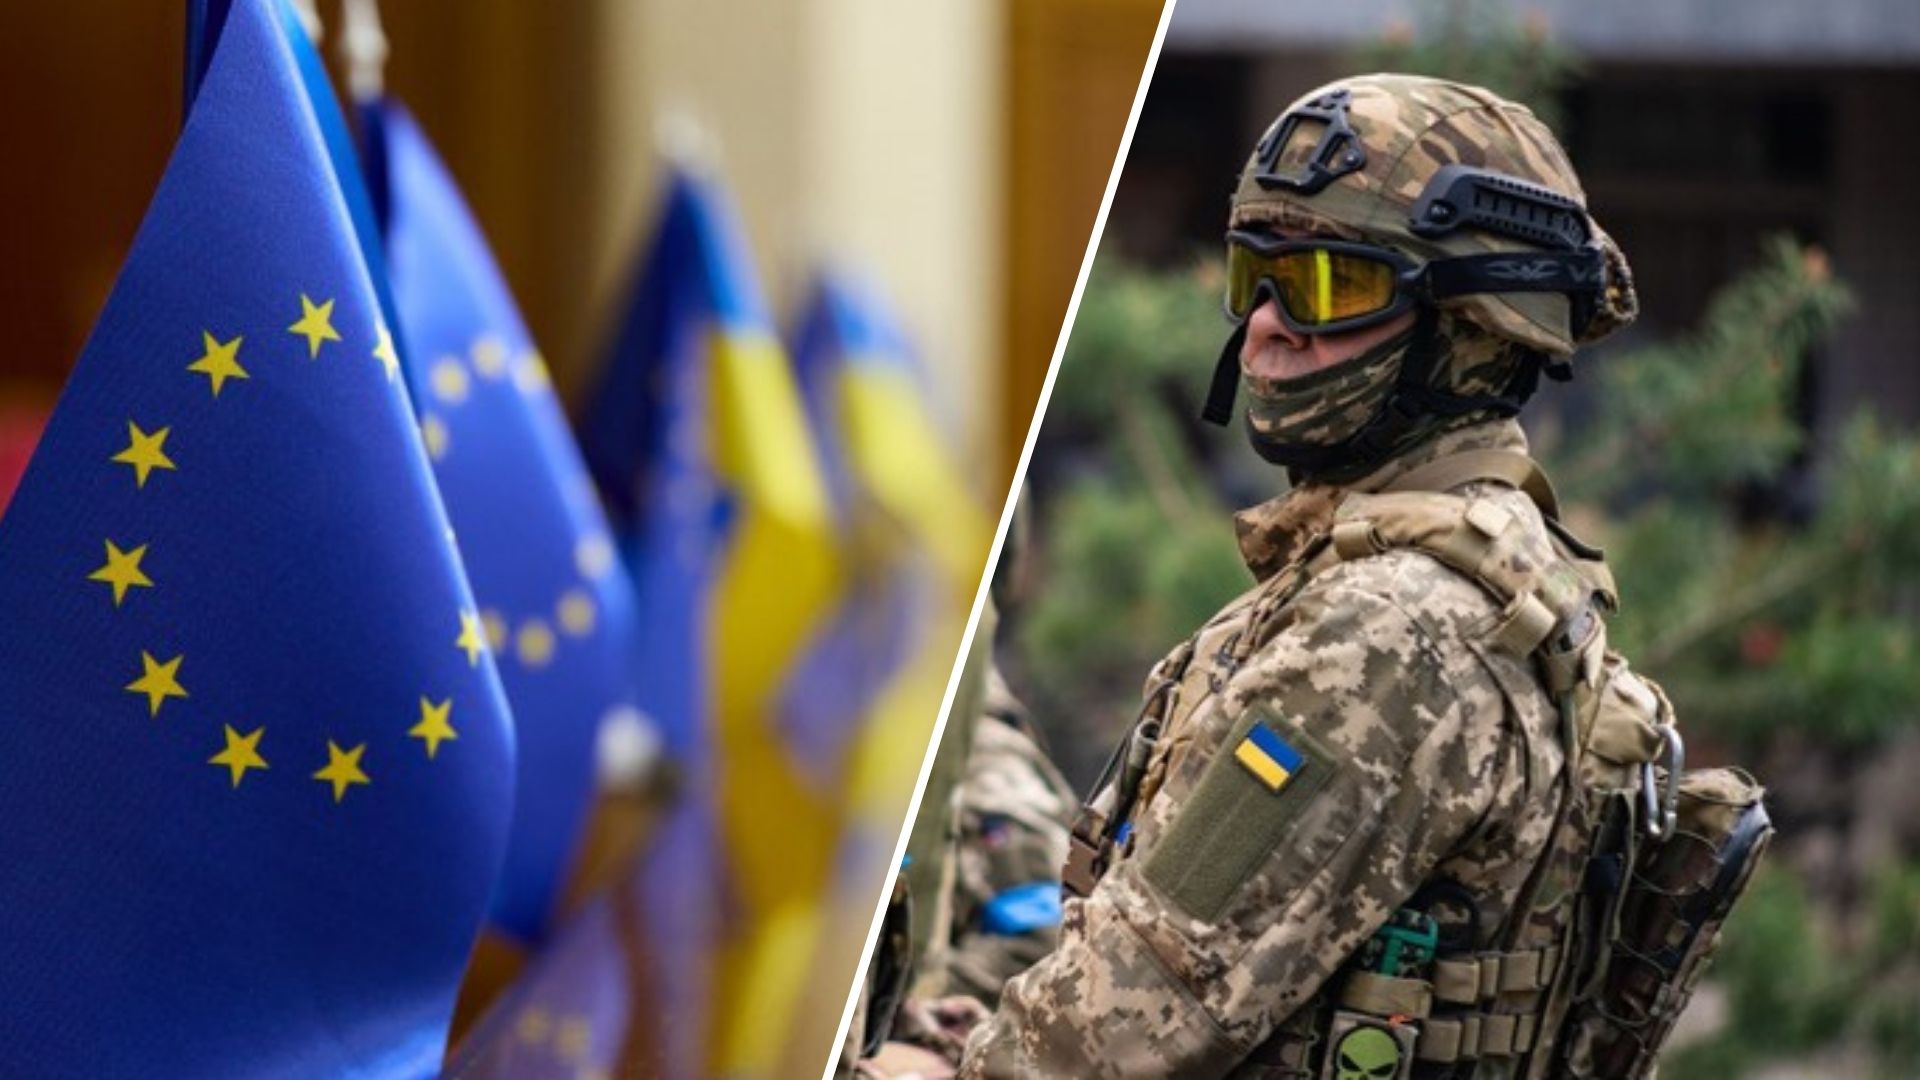 Еврокомиссия и Верховный представитель ЕС Жозеп Боррель представили первую европейскую оборонно-промышленную стратегию на уровне ЕС, которая предусматривает более тесное сотрудничество с Украиной, и предложили амбициозный набор новых мер по поддержке конкурентоспособности и готовности европейской оборонной промышленности.